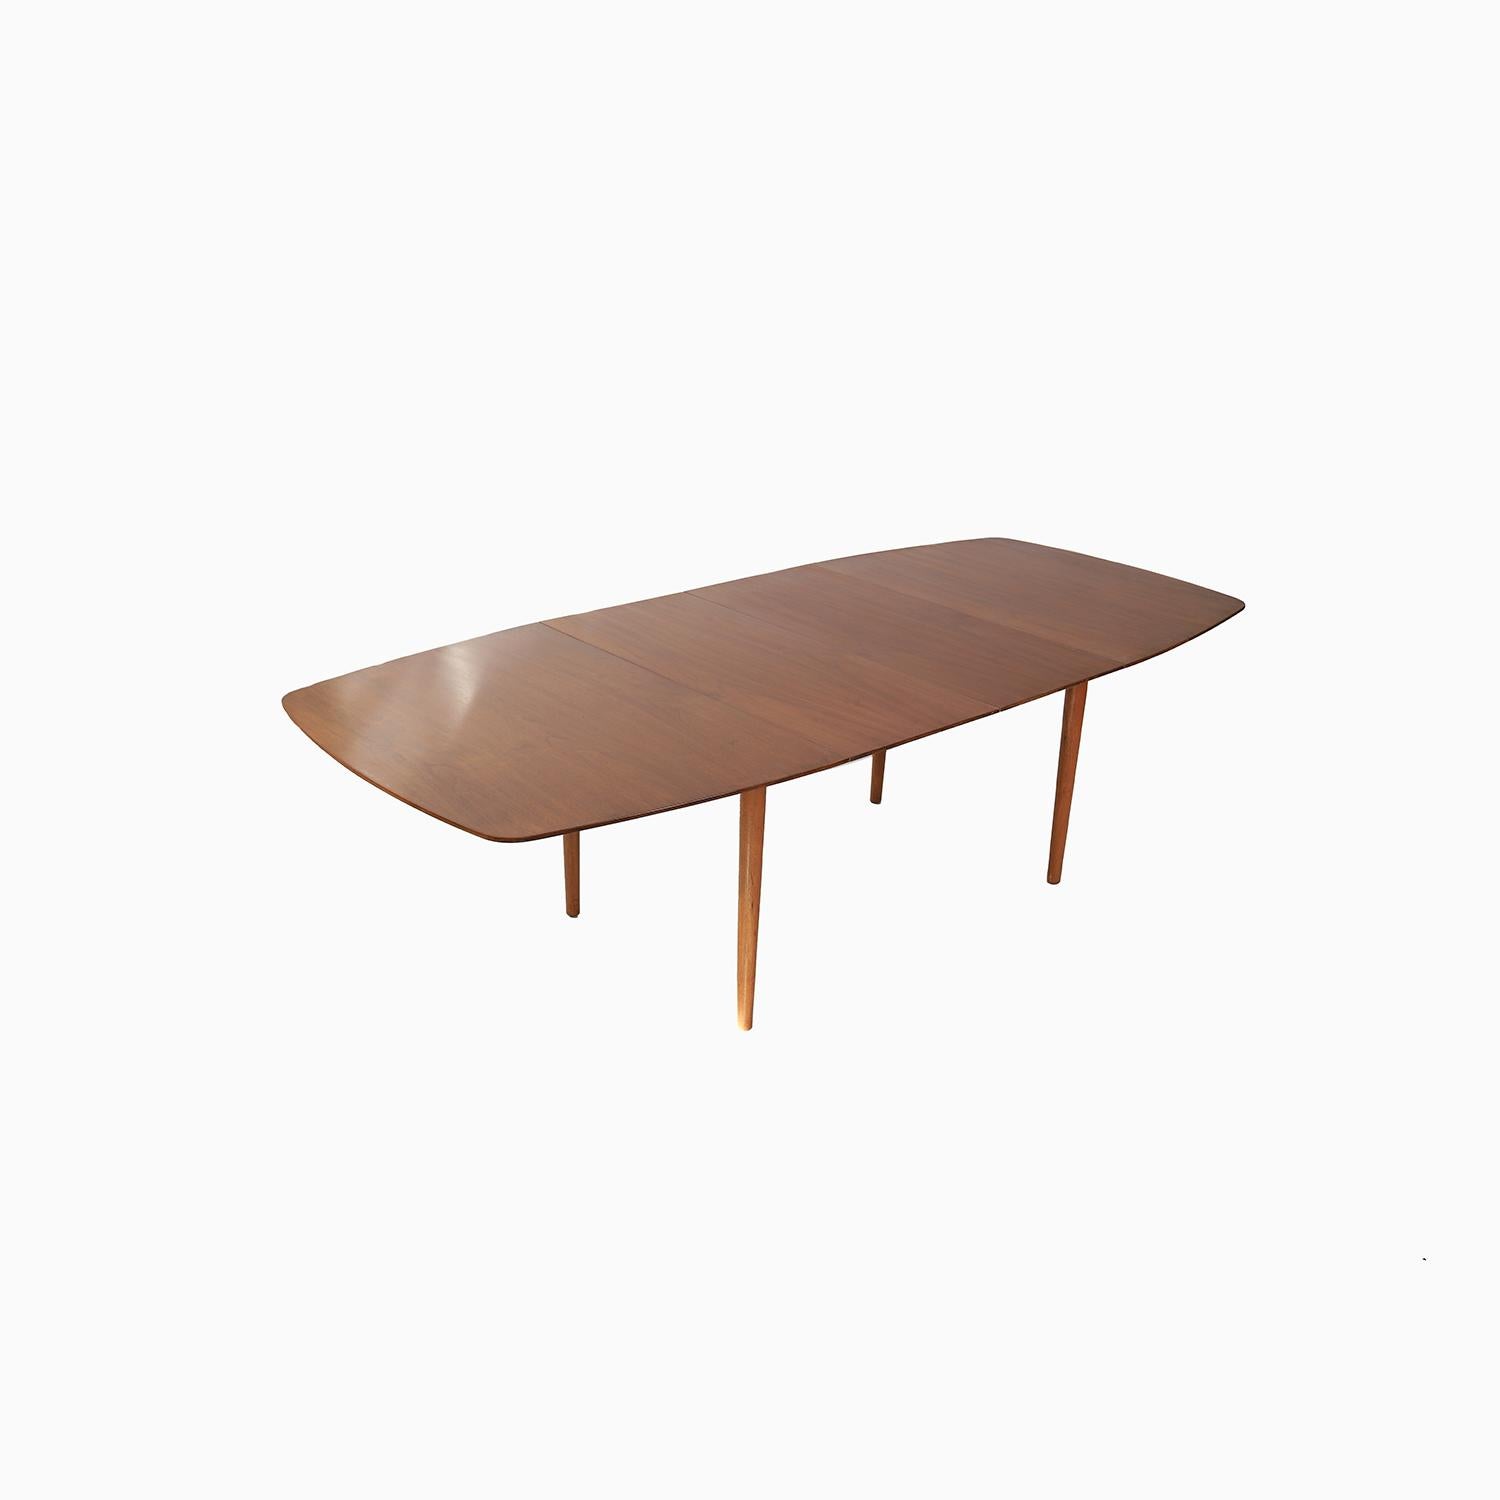 20th Century Danish Modern Finn Juhl Baker Furniture Dining Table For Sale